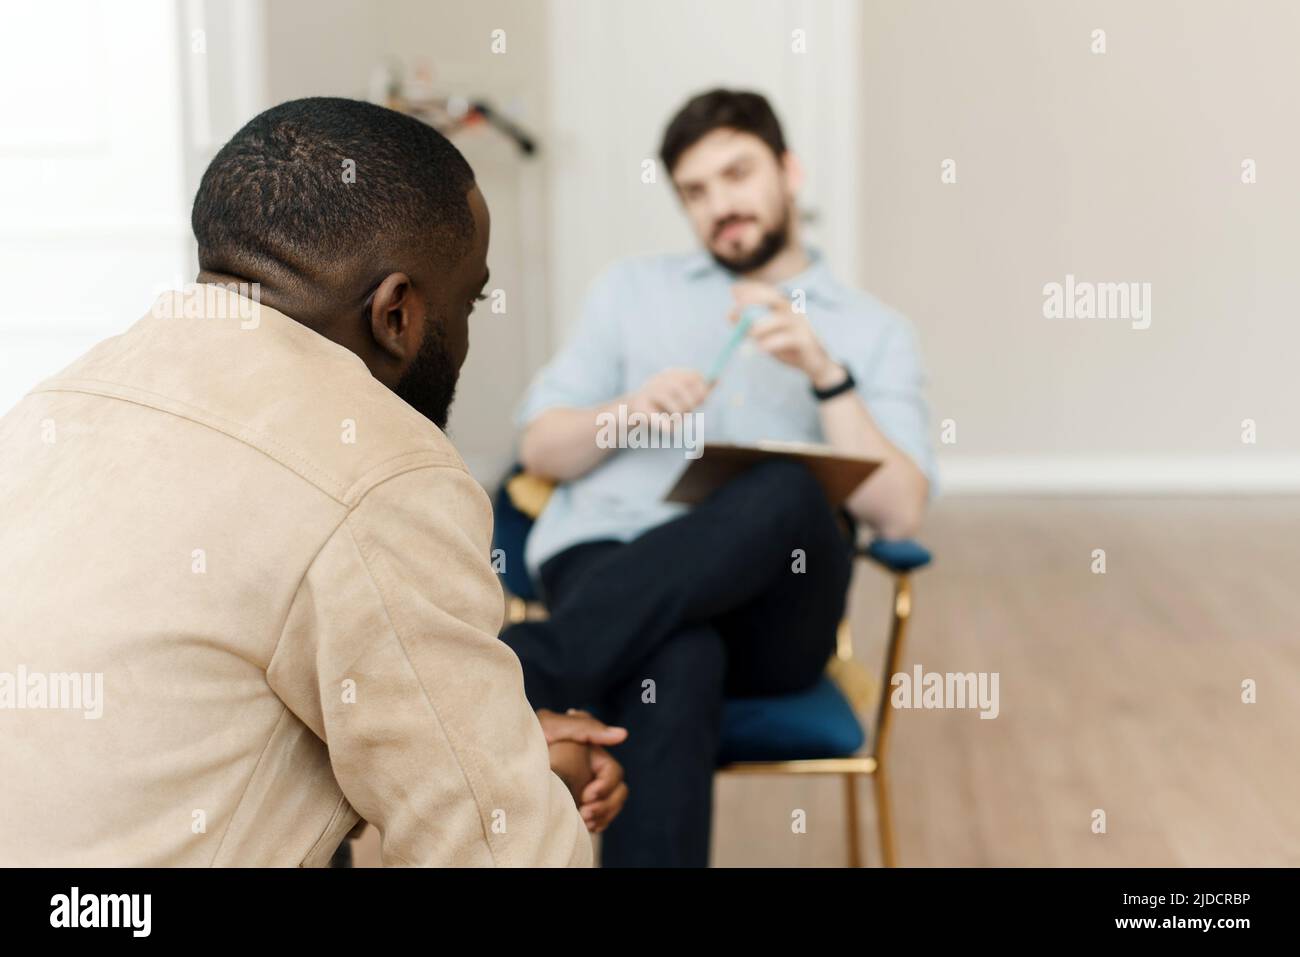 Unglücklicher junger schwarzer Mann, der in der psychiatrischen Klinik mit einem professionellen Psychologen eine Sitzung hatte. Professionelles psychologisches Hilfekonzept. Stockfoto